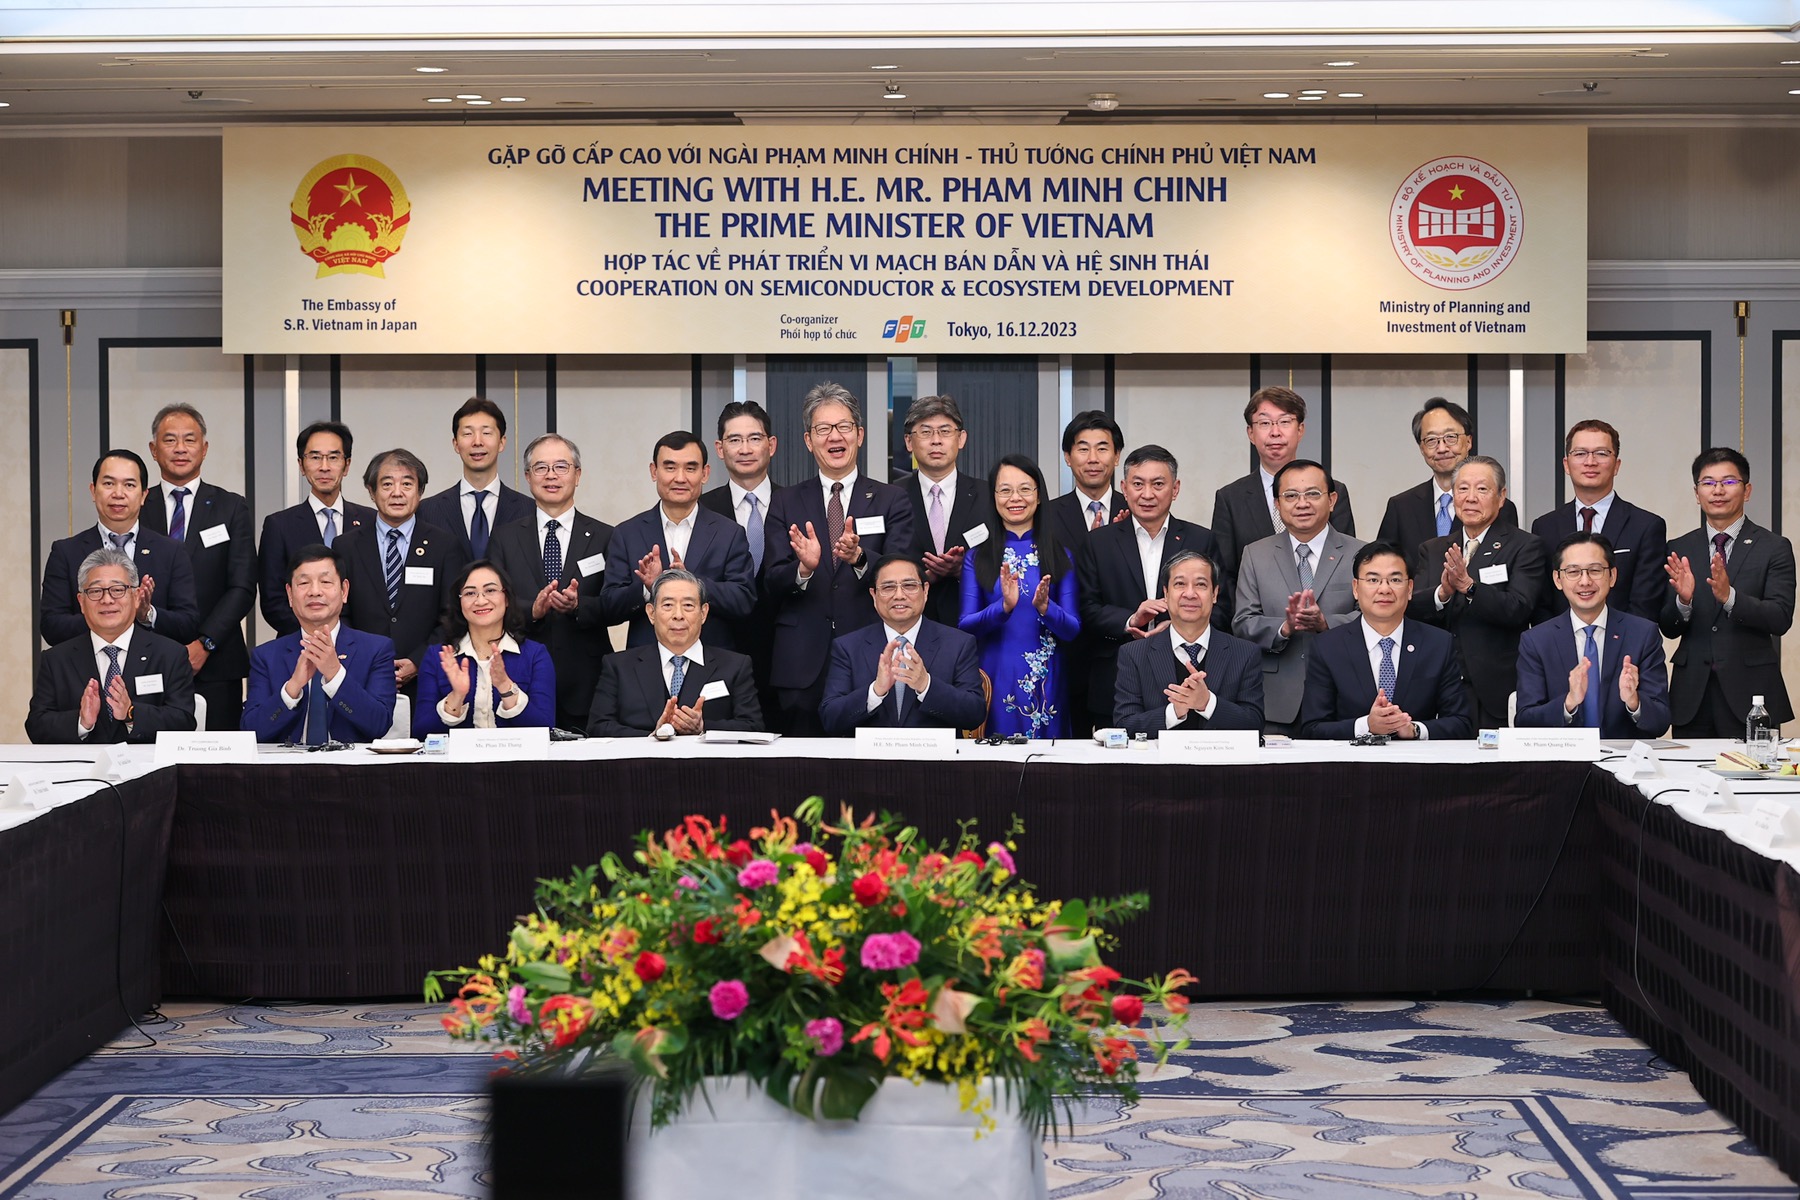 Thủ tướng chụp ảnh lưu niệm tại buổi gặp gỡ, làm việc với các tập đoàn, doanh nghiệp hàng đầu của Nhật Bản về hợp tác phát triển vi mạch bán dẫn và hệ sinh thái đi cùng - Ảnh: VGP/Nhật Bắc